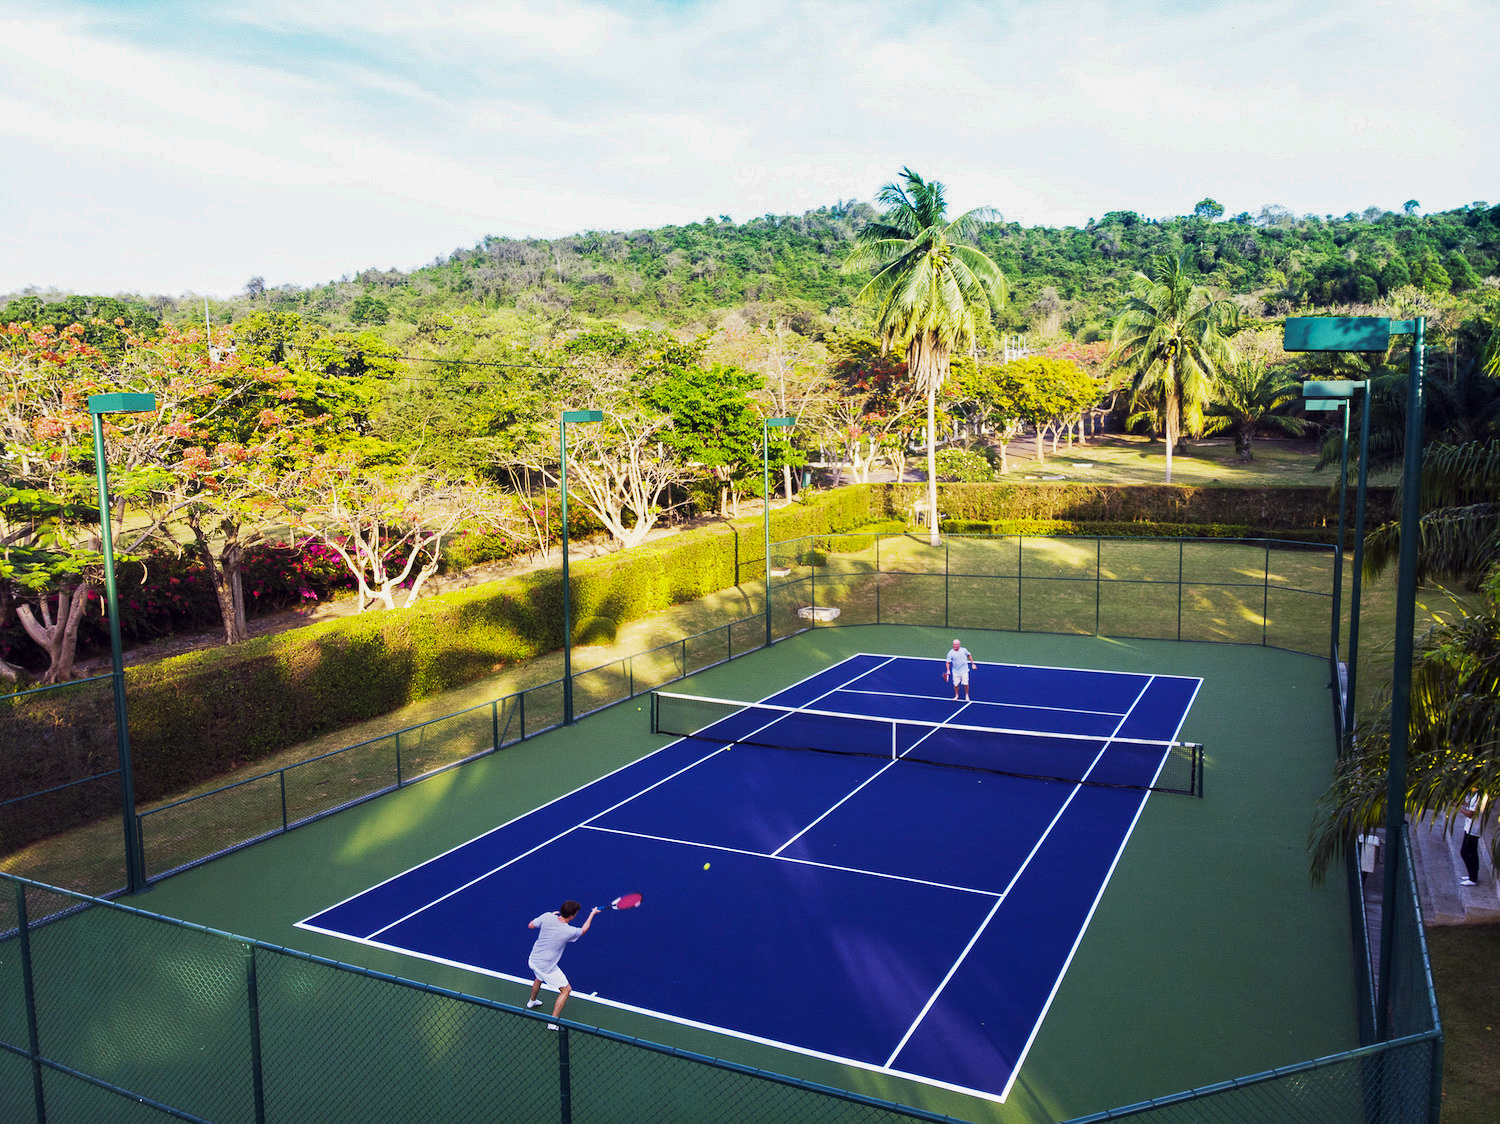 Activities1 - Tennis Court.jpg